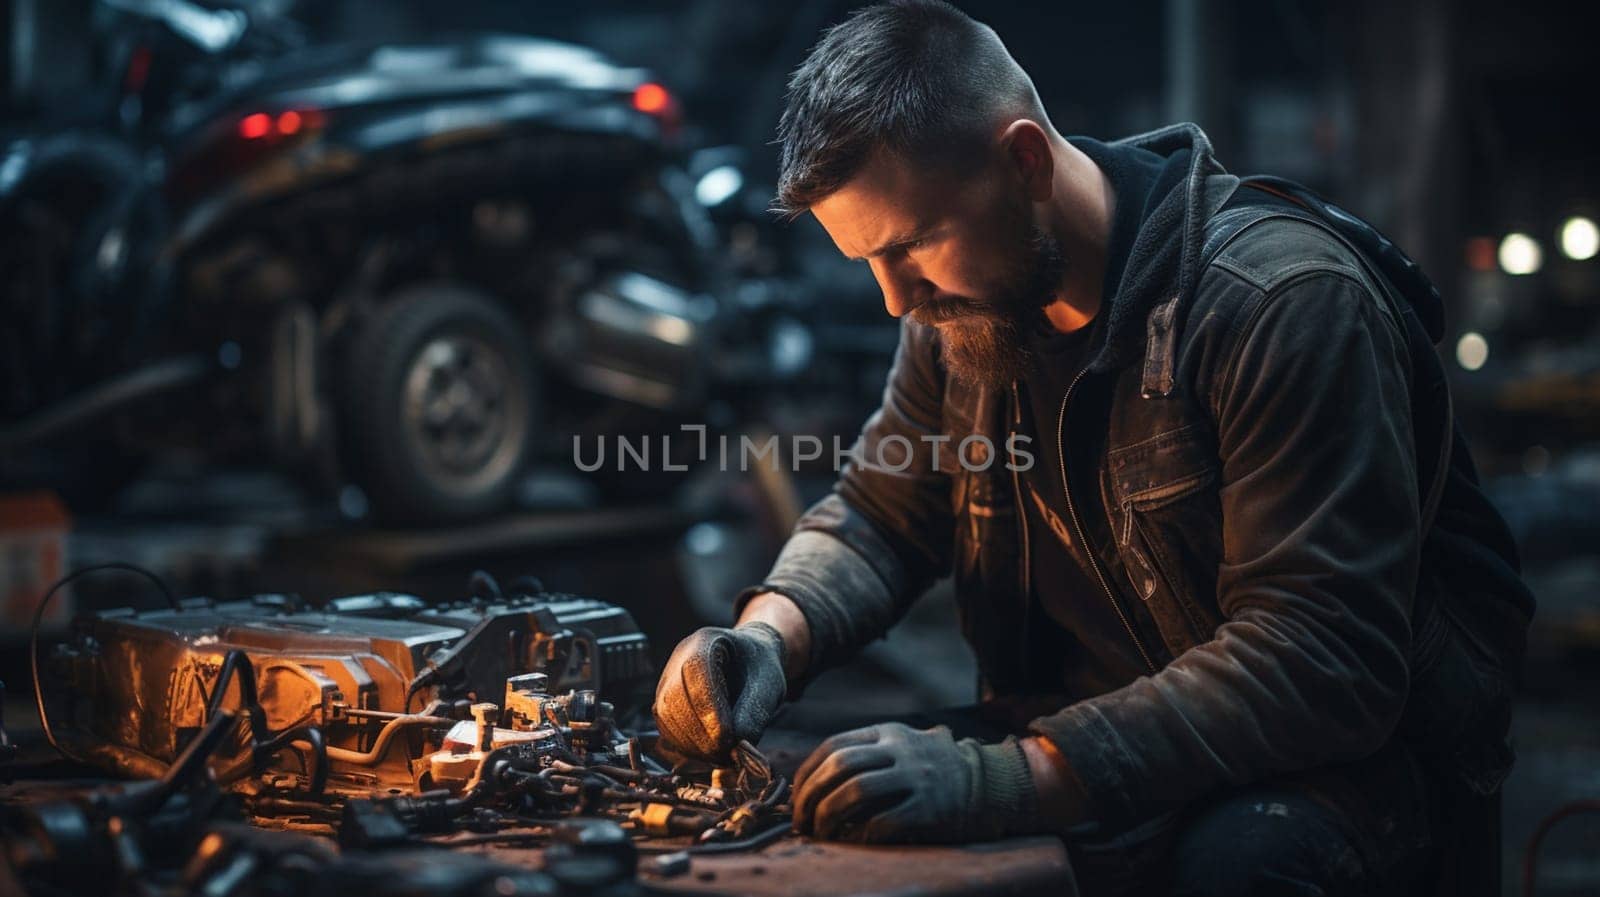 repairman mechanic at car repairing work using a tool by Andelov13